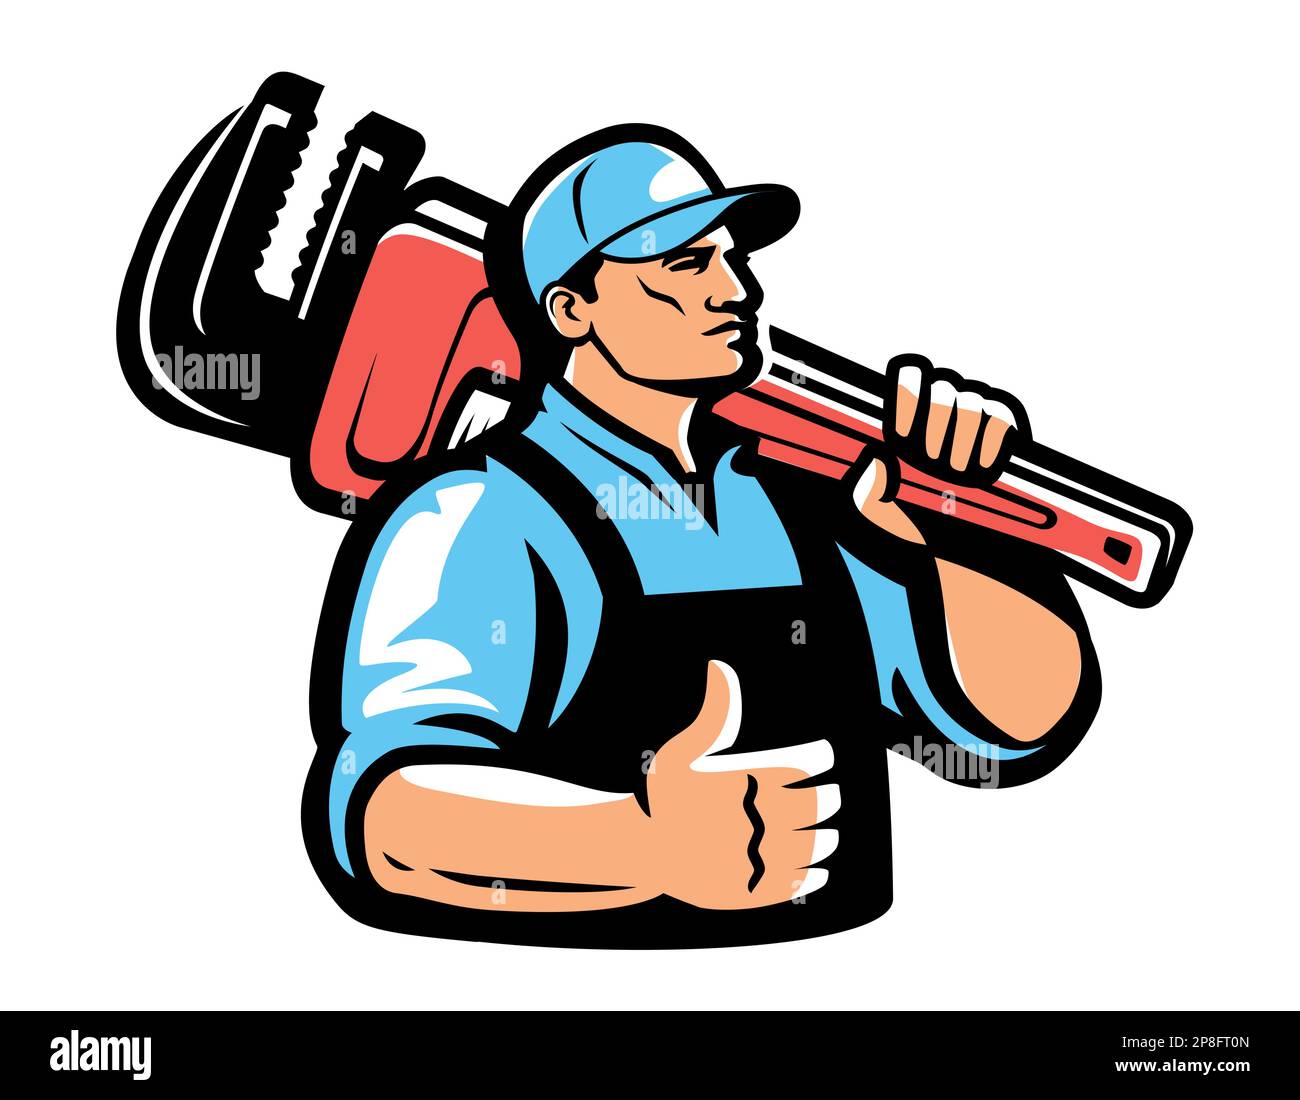 Emblema per l'assistenza tecnica. Idraulico con logo chiave idraulica. Illustrazione vettoriale per lavori di costruzione, officina, riparazione Illustrazione Vettoriale